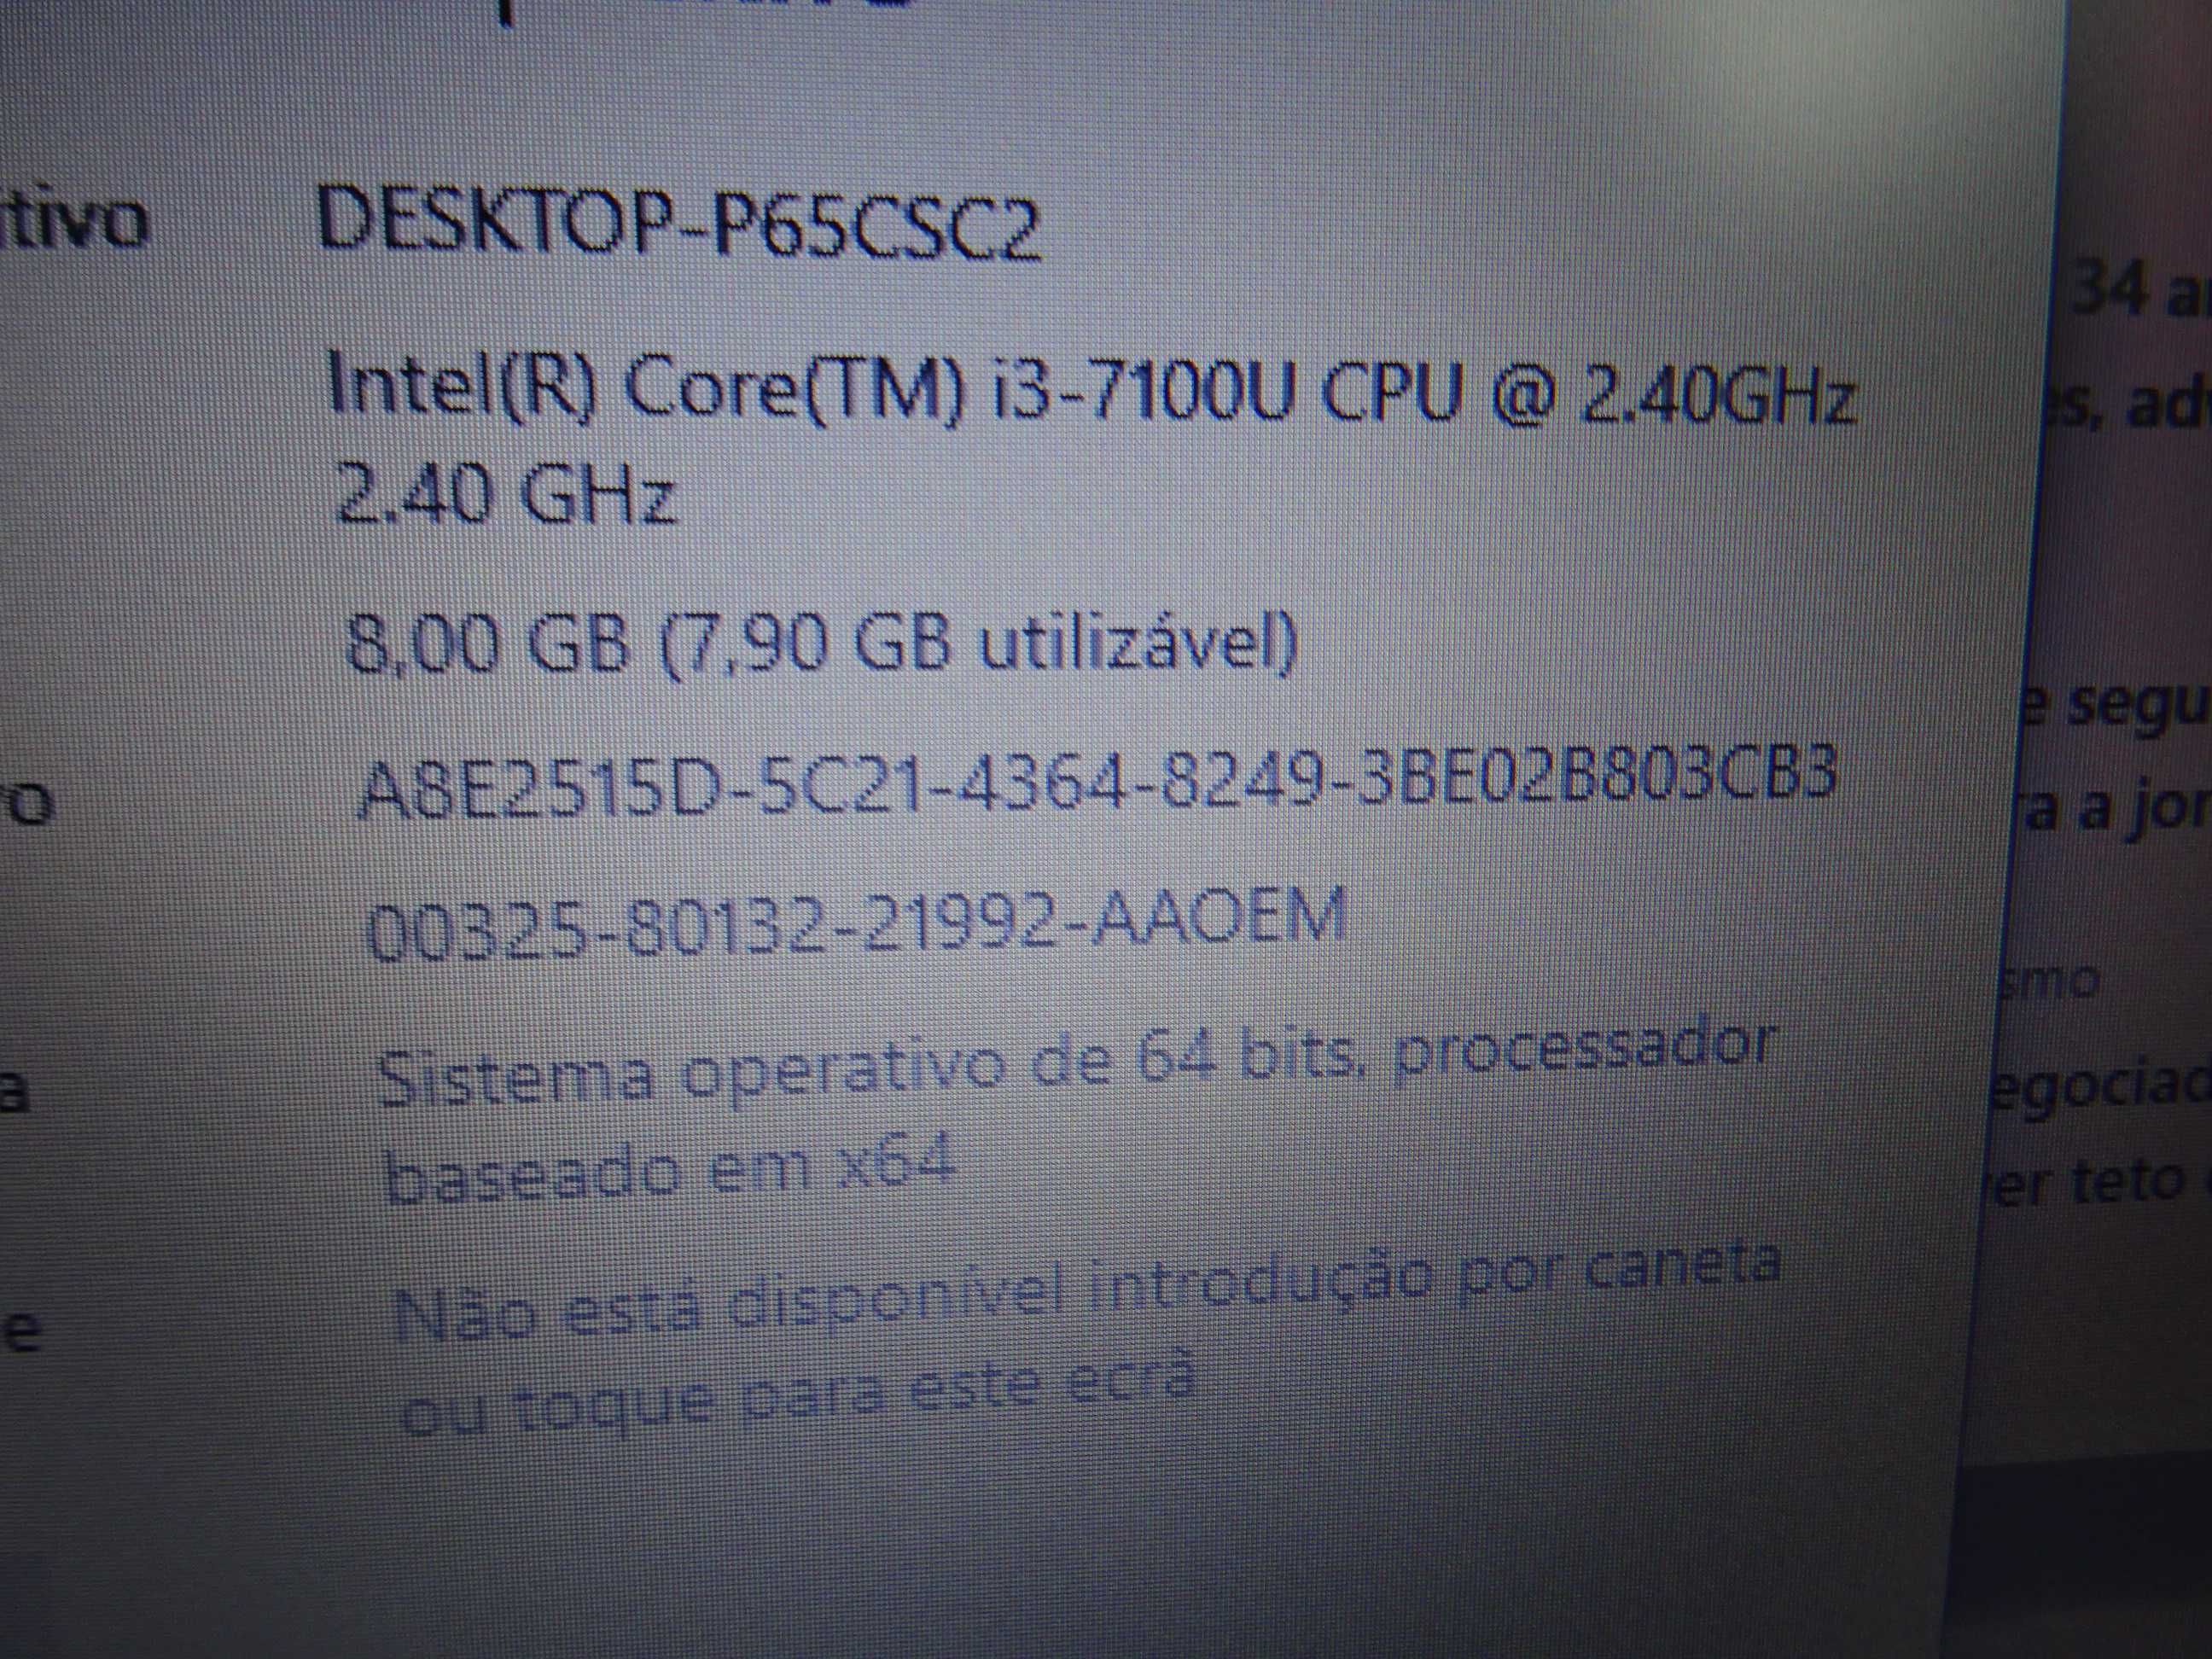 PROMOÇÃO: HP ProBook 430 G5 - i3 7ªger; 8/256gb; ecran 13.3"-Garantia